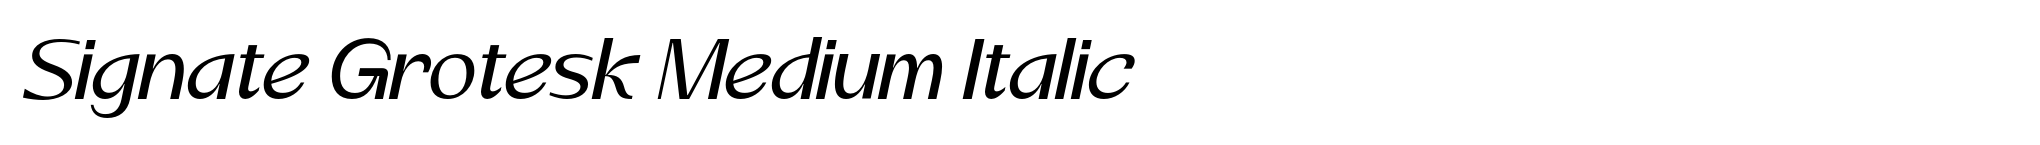 Signate Grotesk Medium Italic image